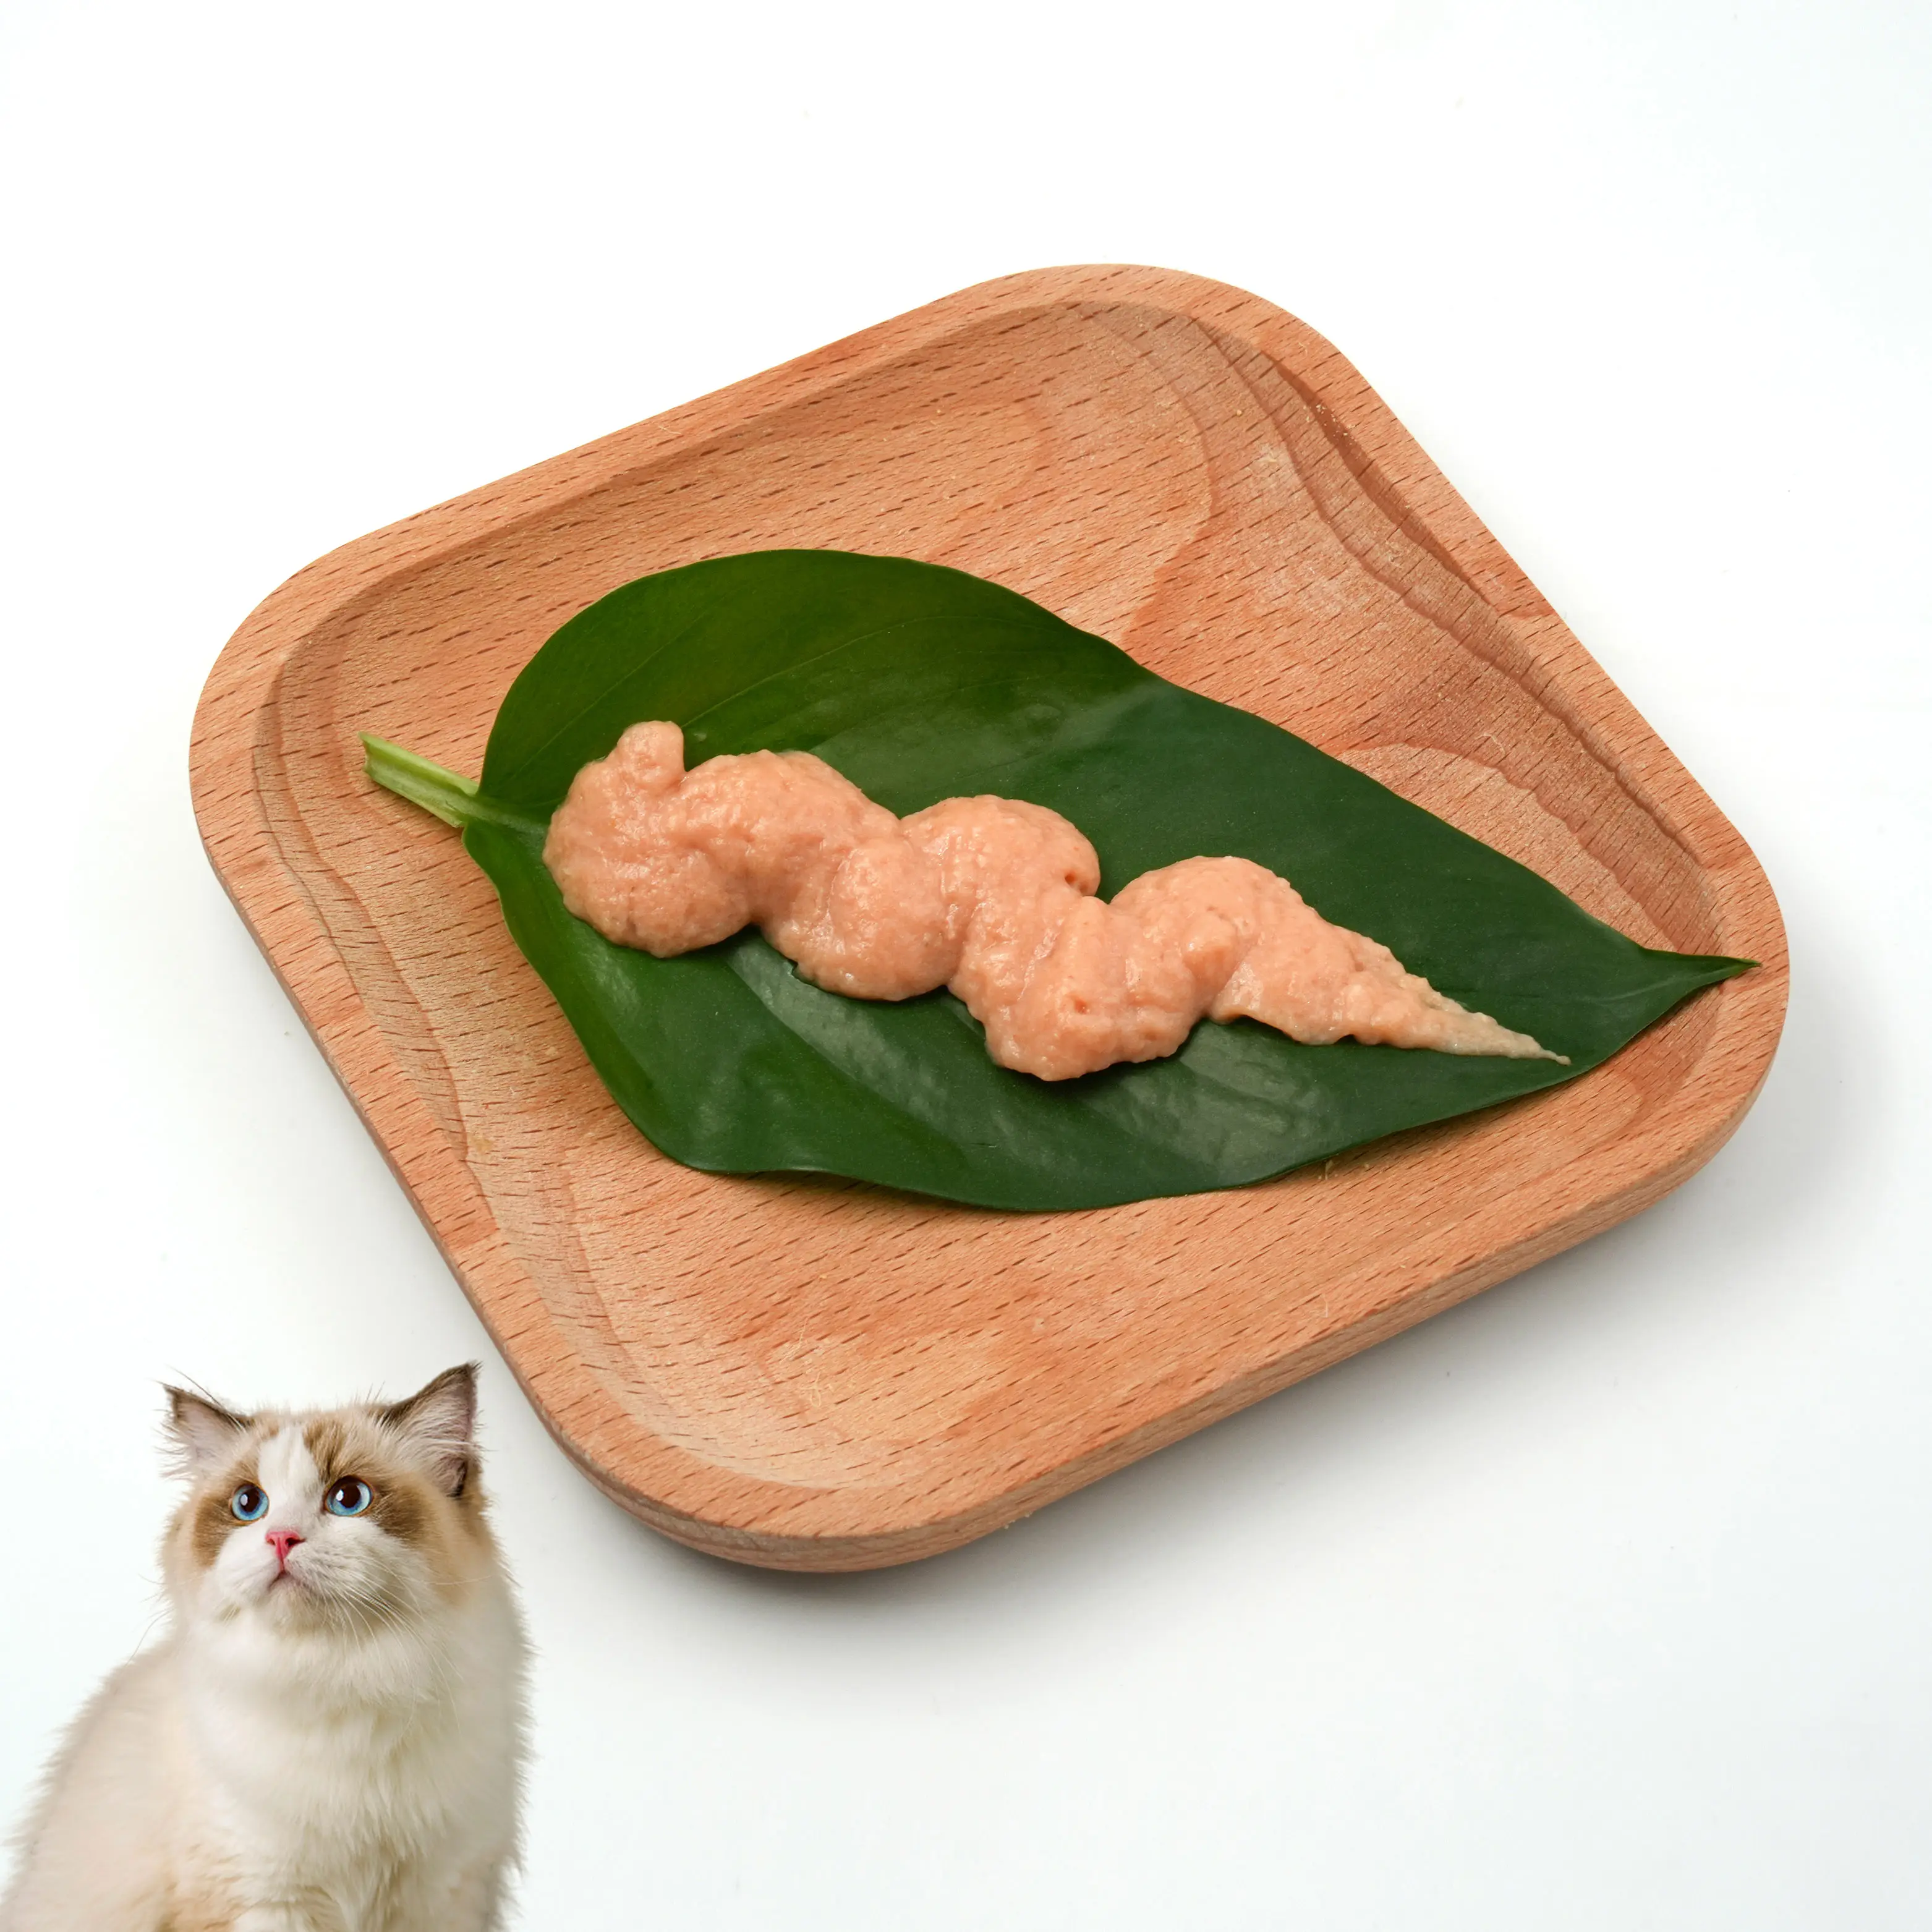 Vente en gros très vendue complément nutritionnel bandes de thon pour chat friandises crémeuses pour chat aliments humides pour animaux domestiques